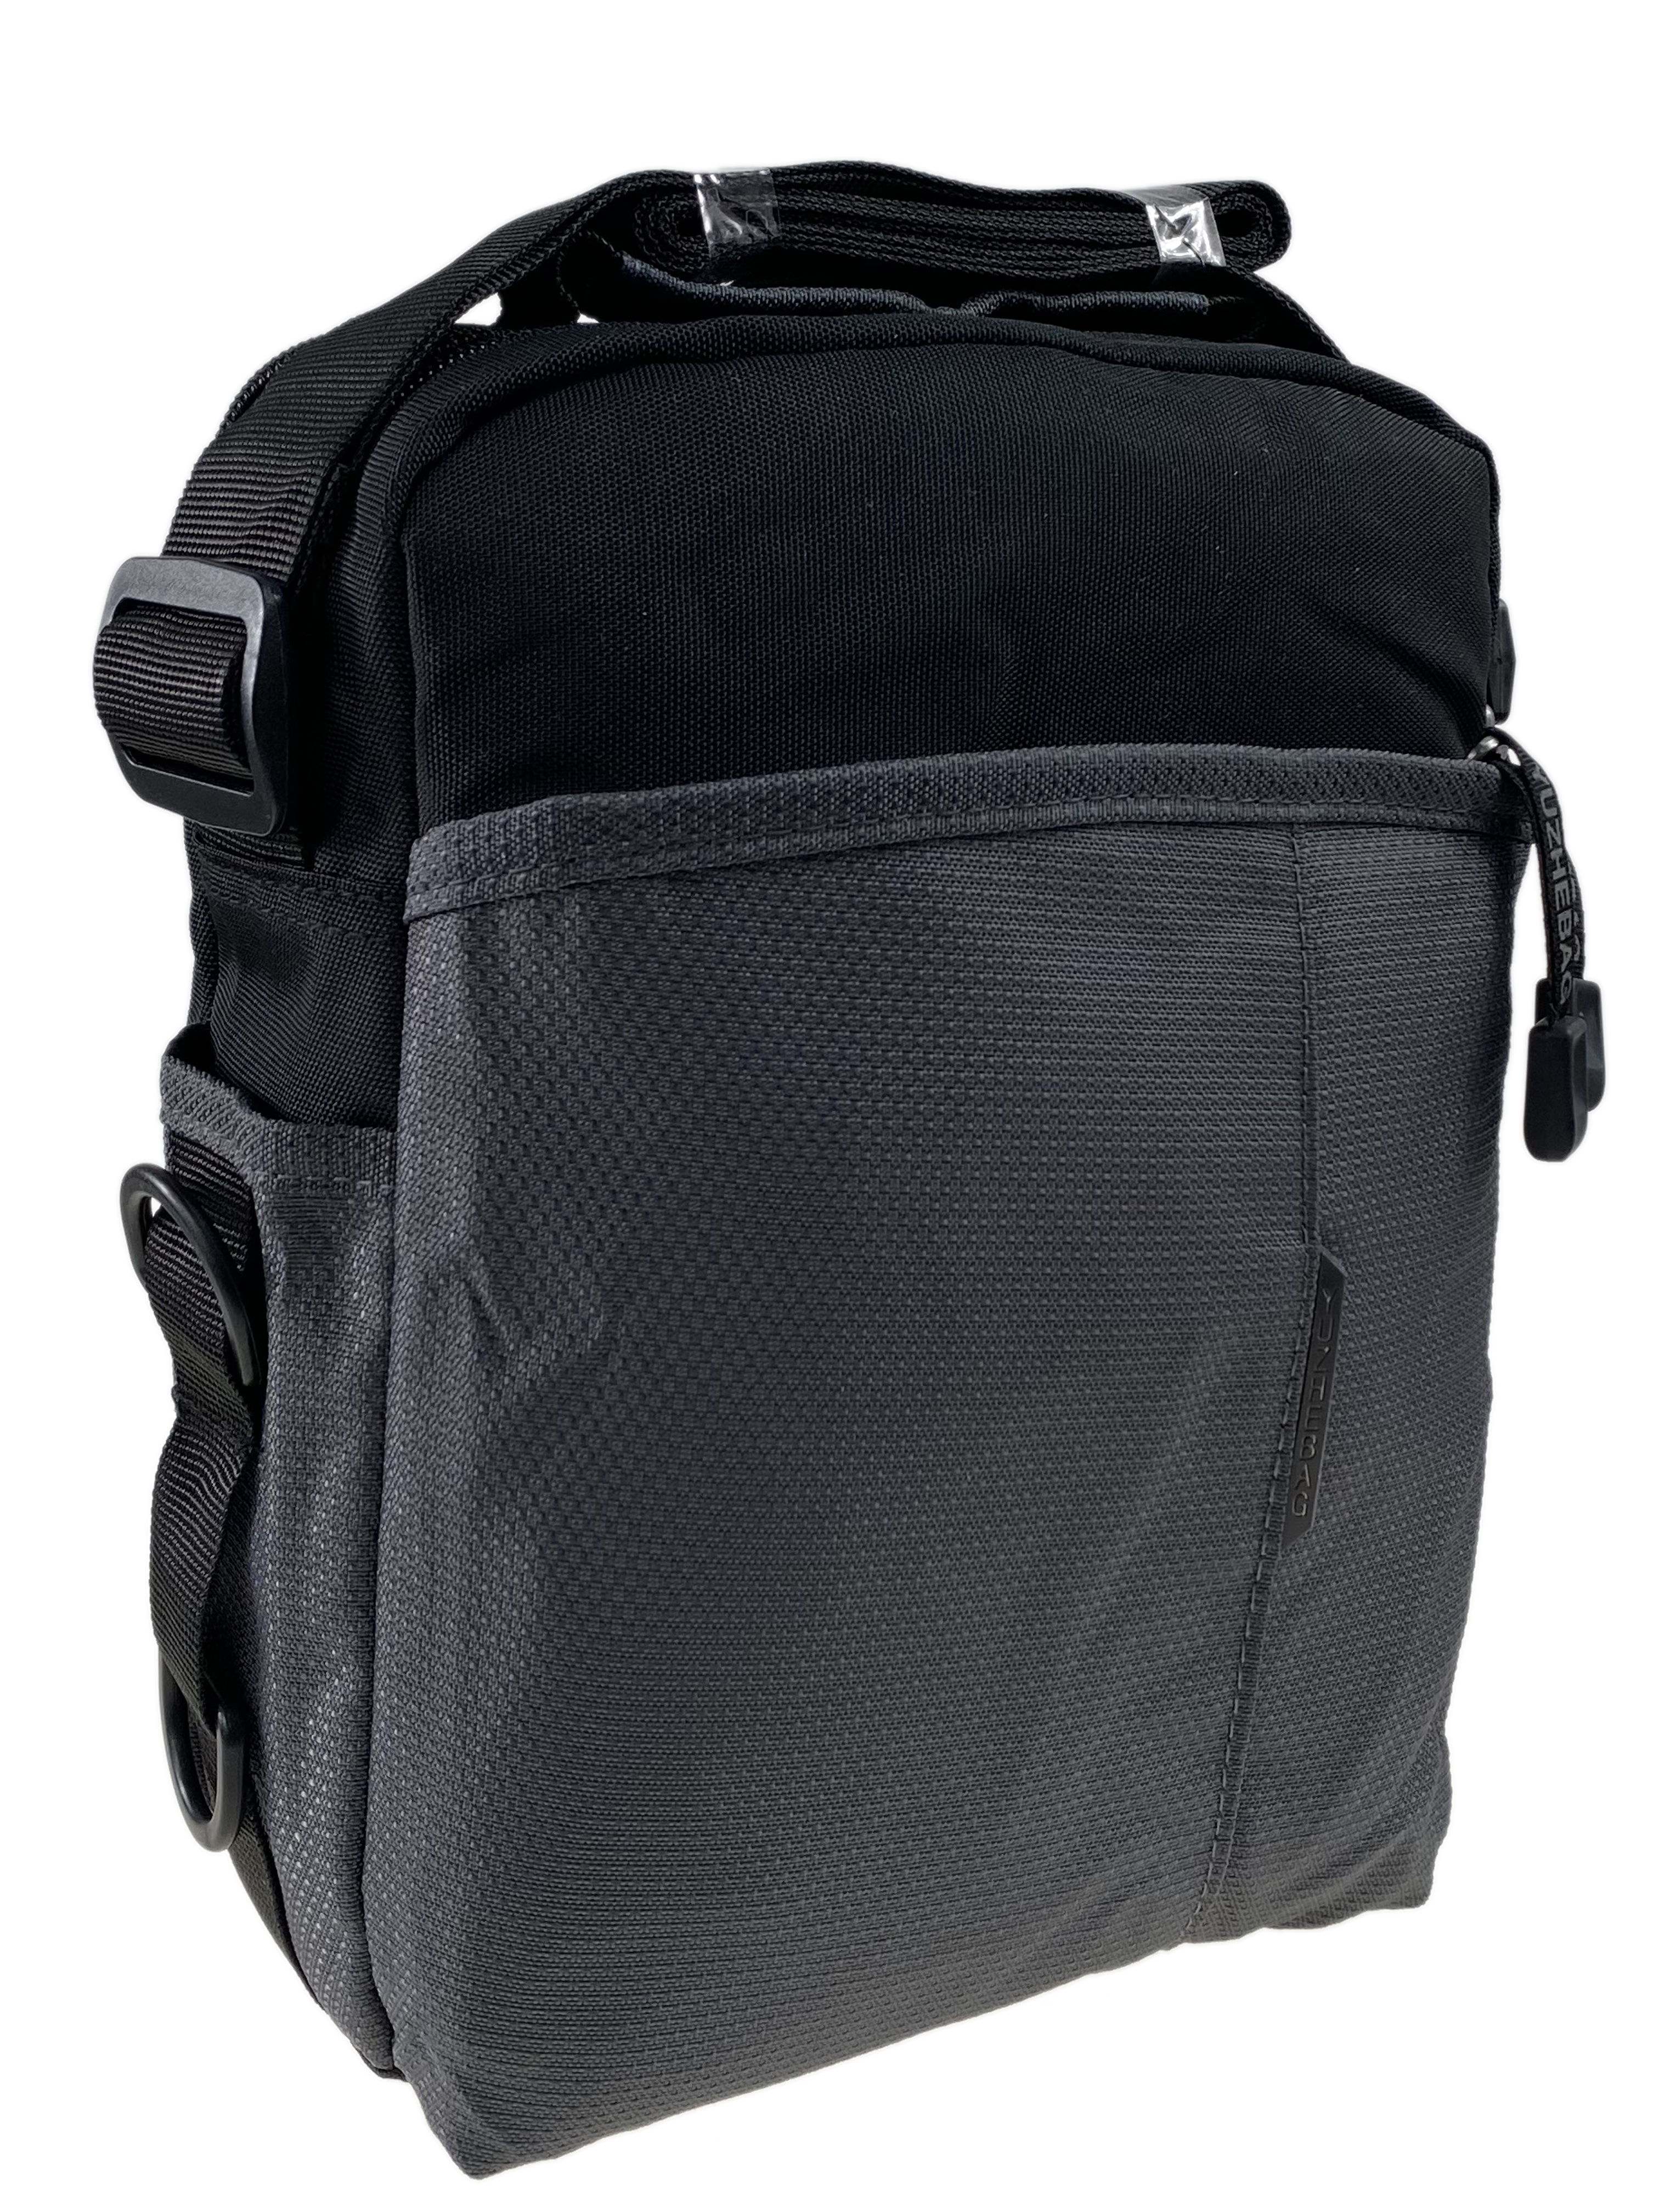 Мужская сумка из текстиля, цвет серый/чёрный